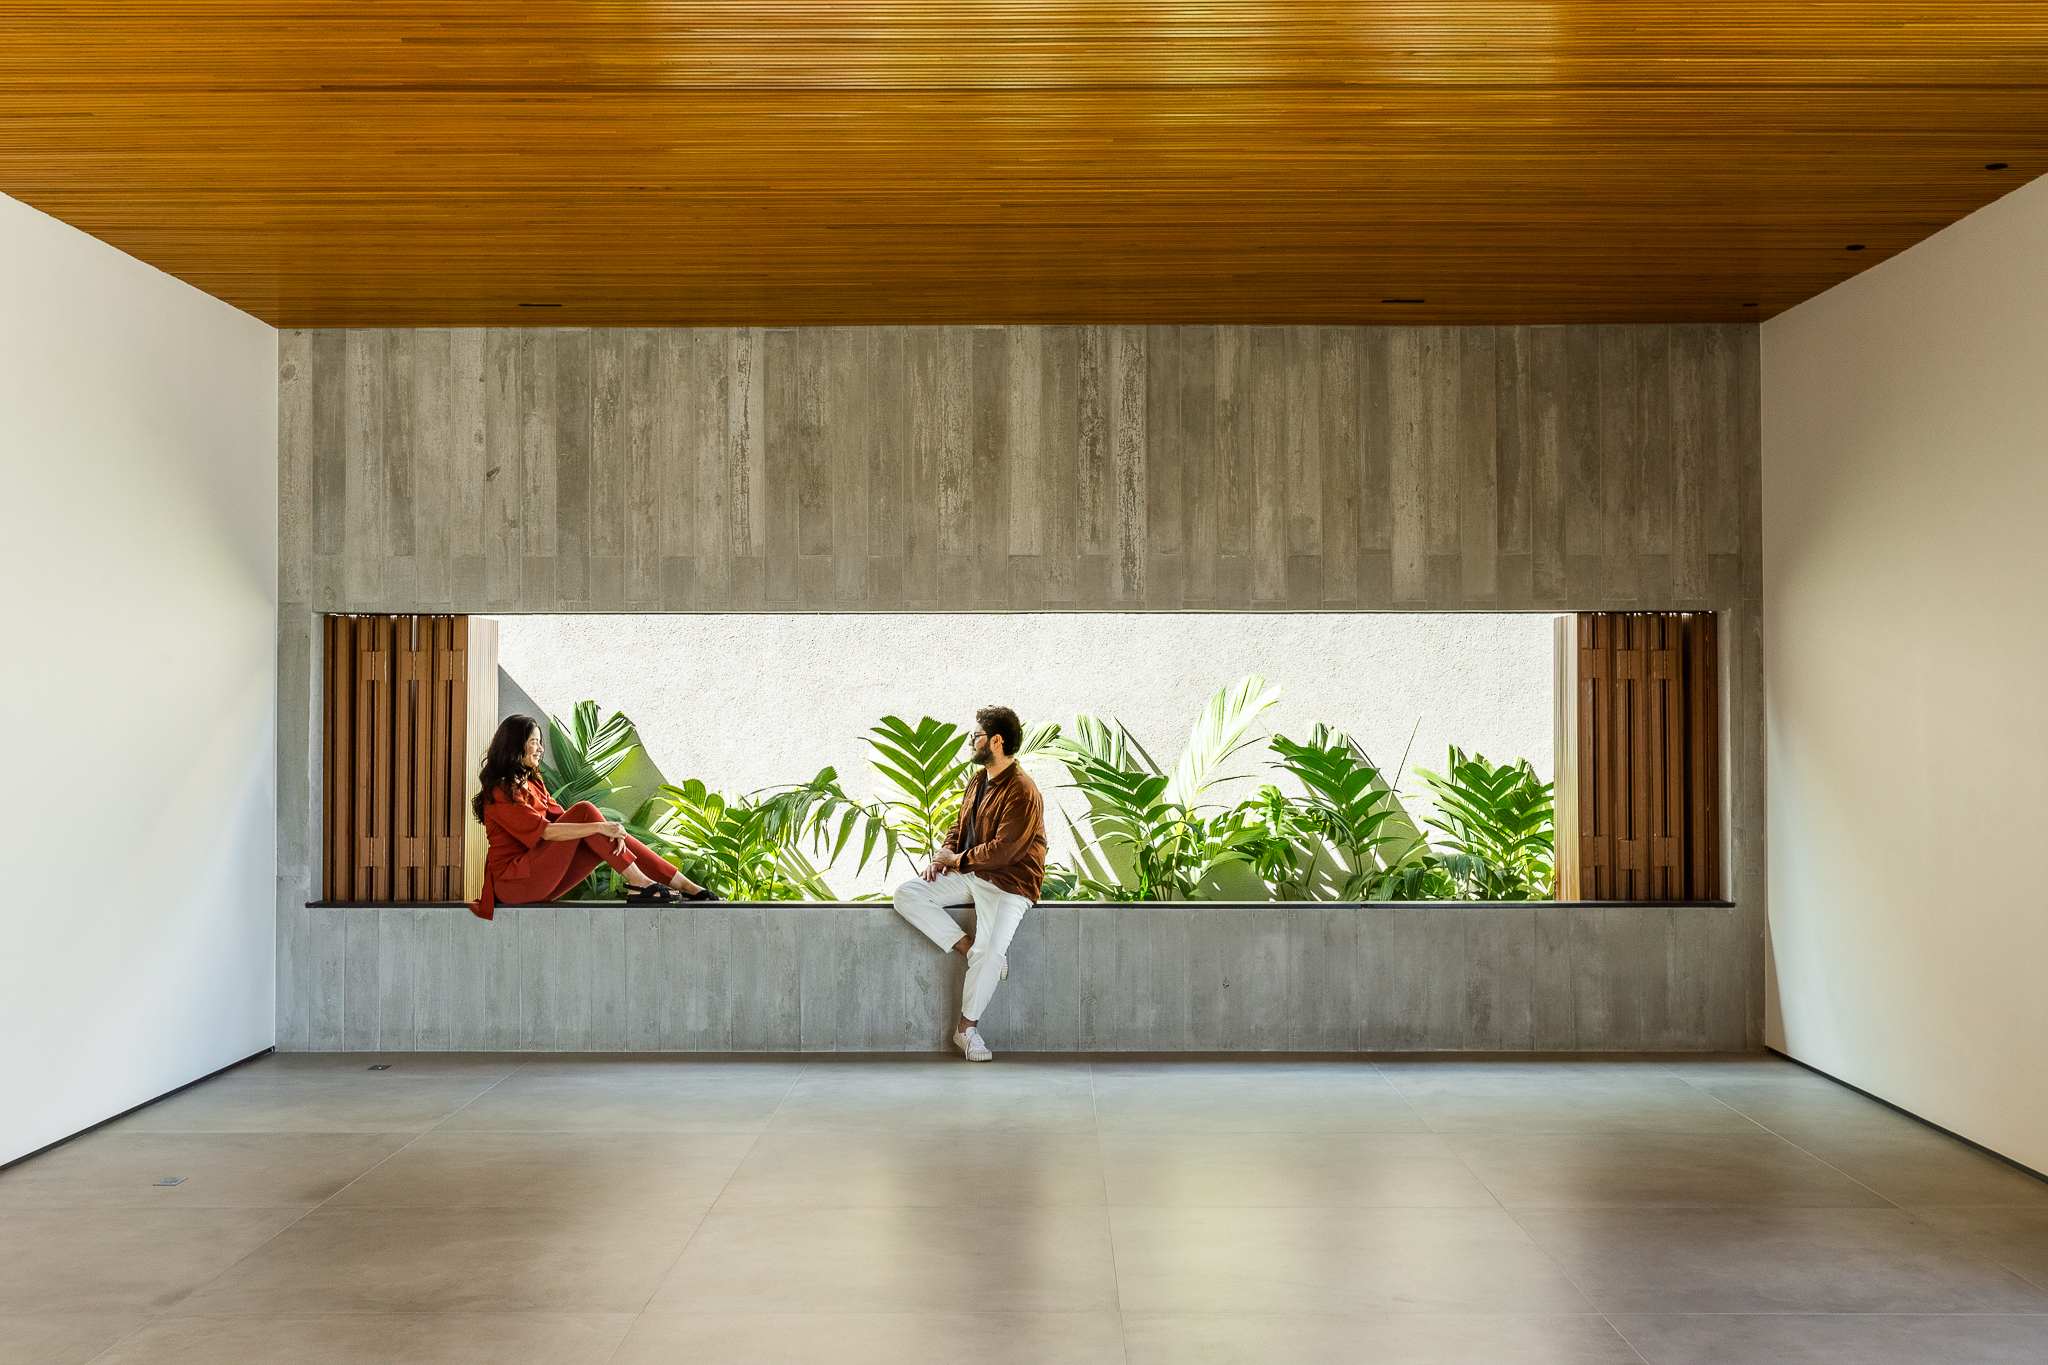 Casa de 379 m² une arquitetura minimalista e integração com o entorno. Projeto Camila Porto. Na foto, abertura na arquitetura com vista para o jardim.